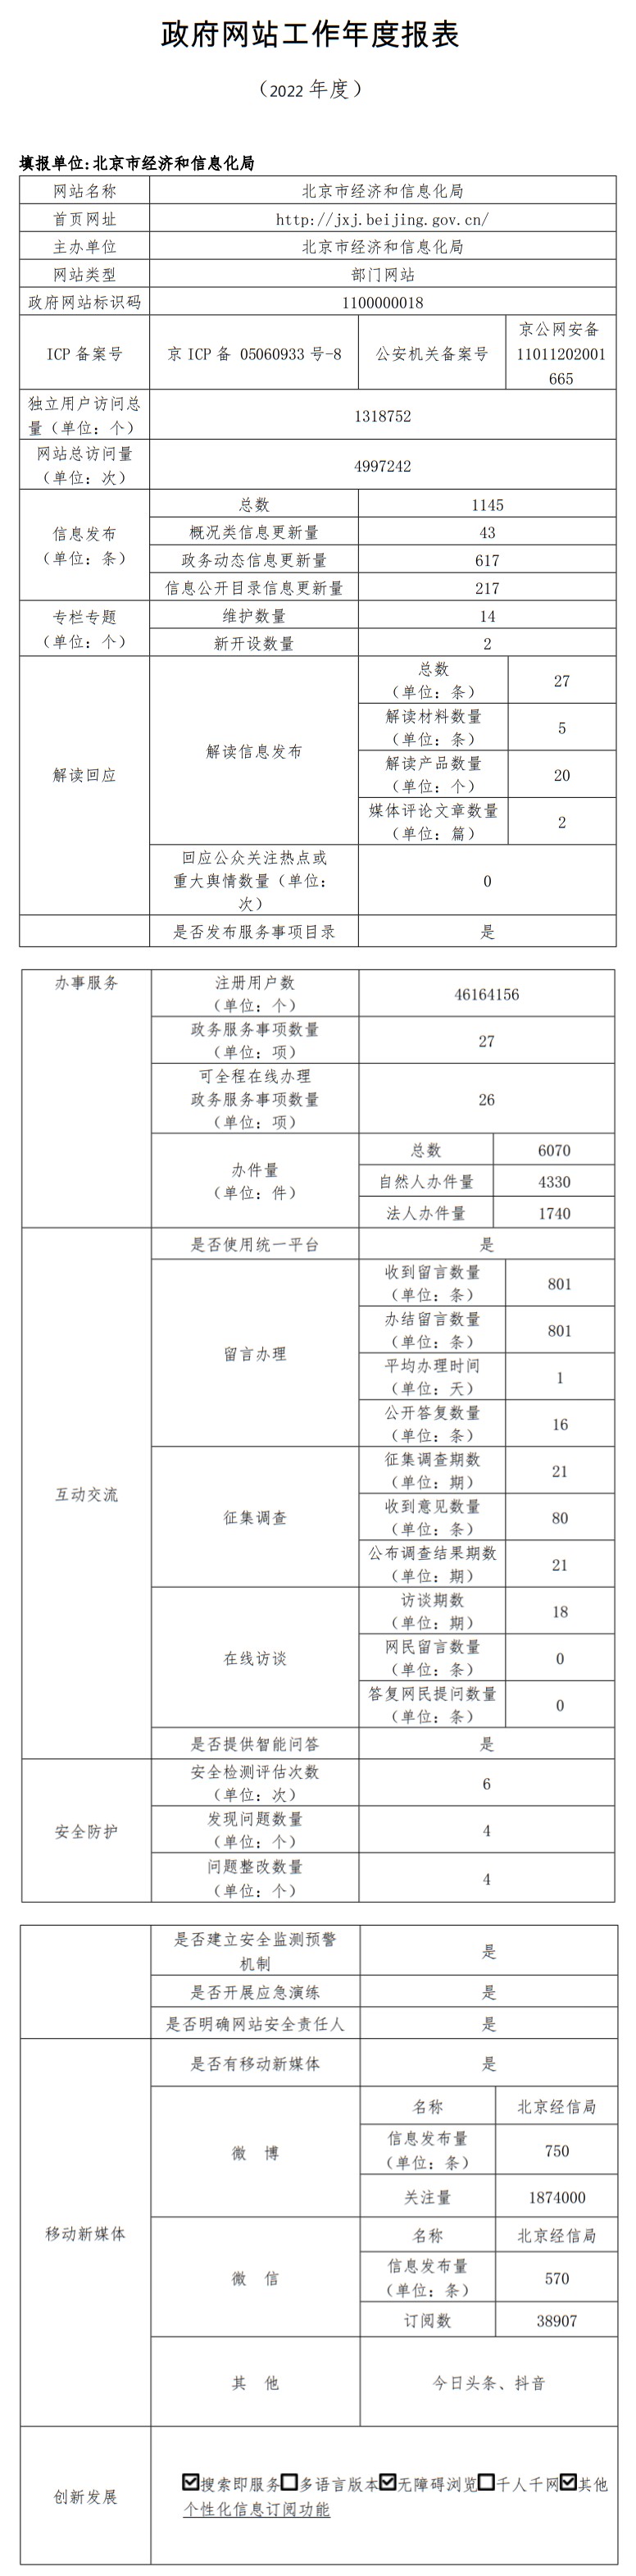 北京市经济和信息化局2022年政府网站年度工作报表